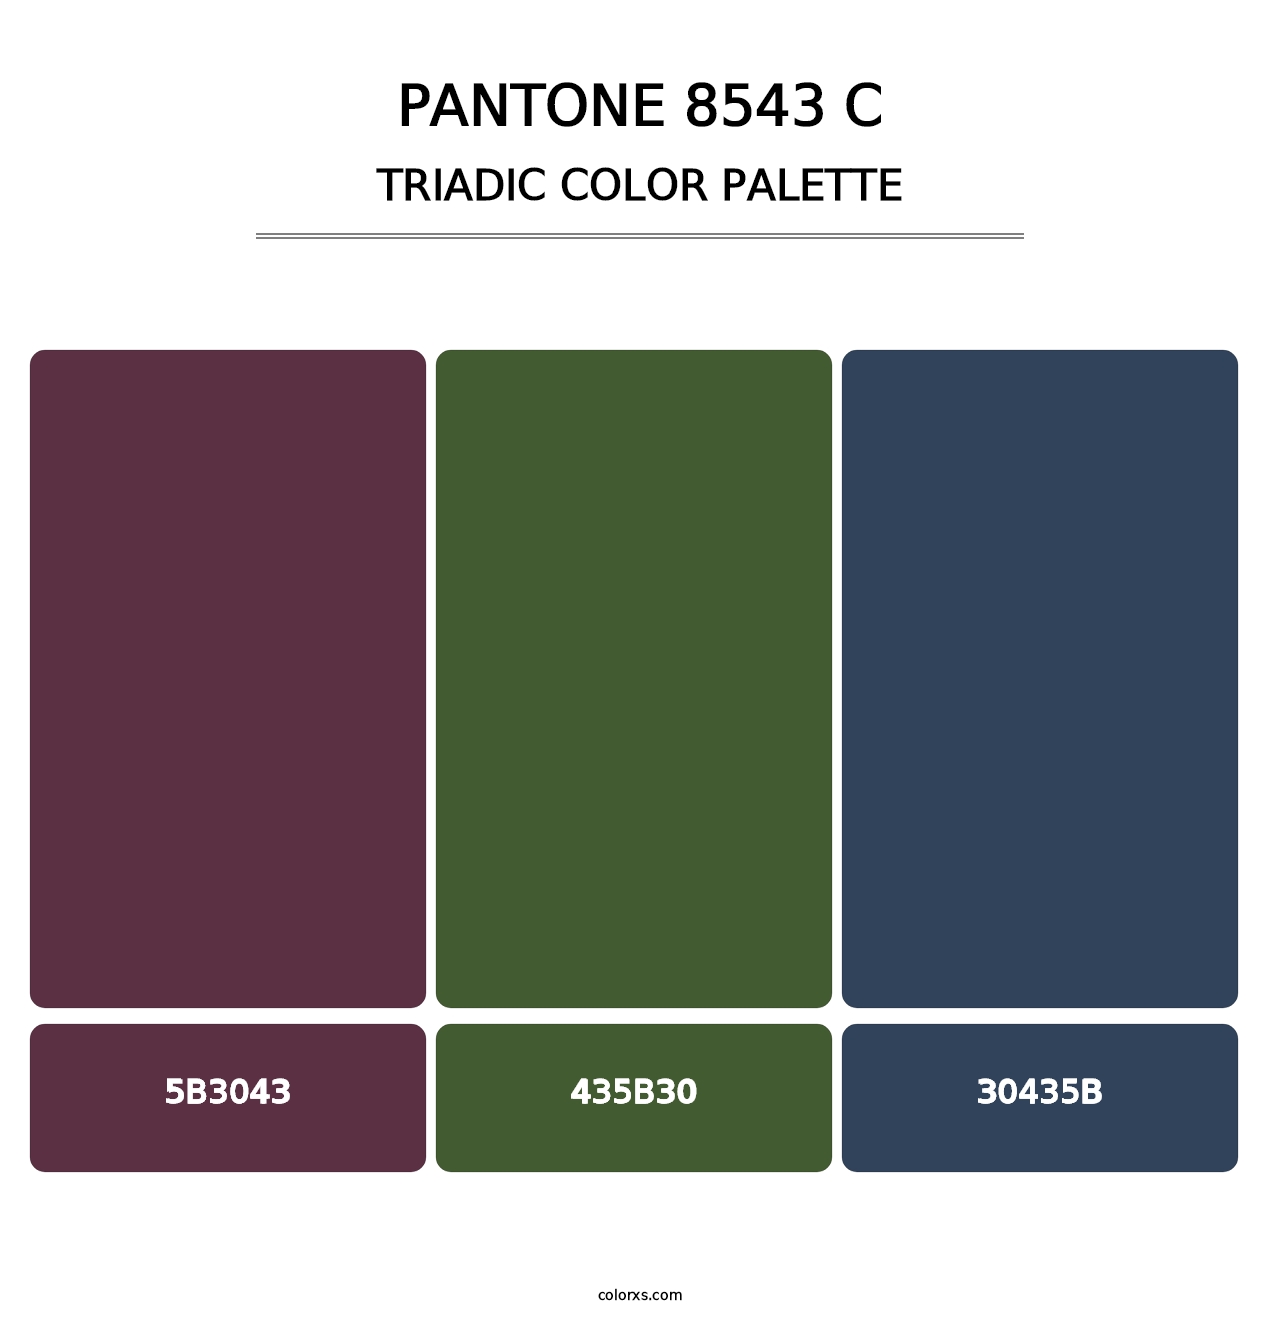 PANTONE 8543 C - Triadic Color Palette